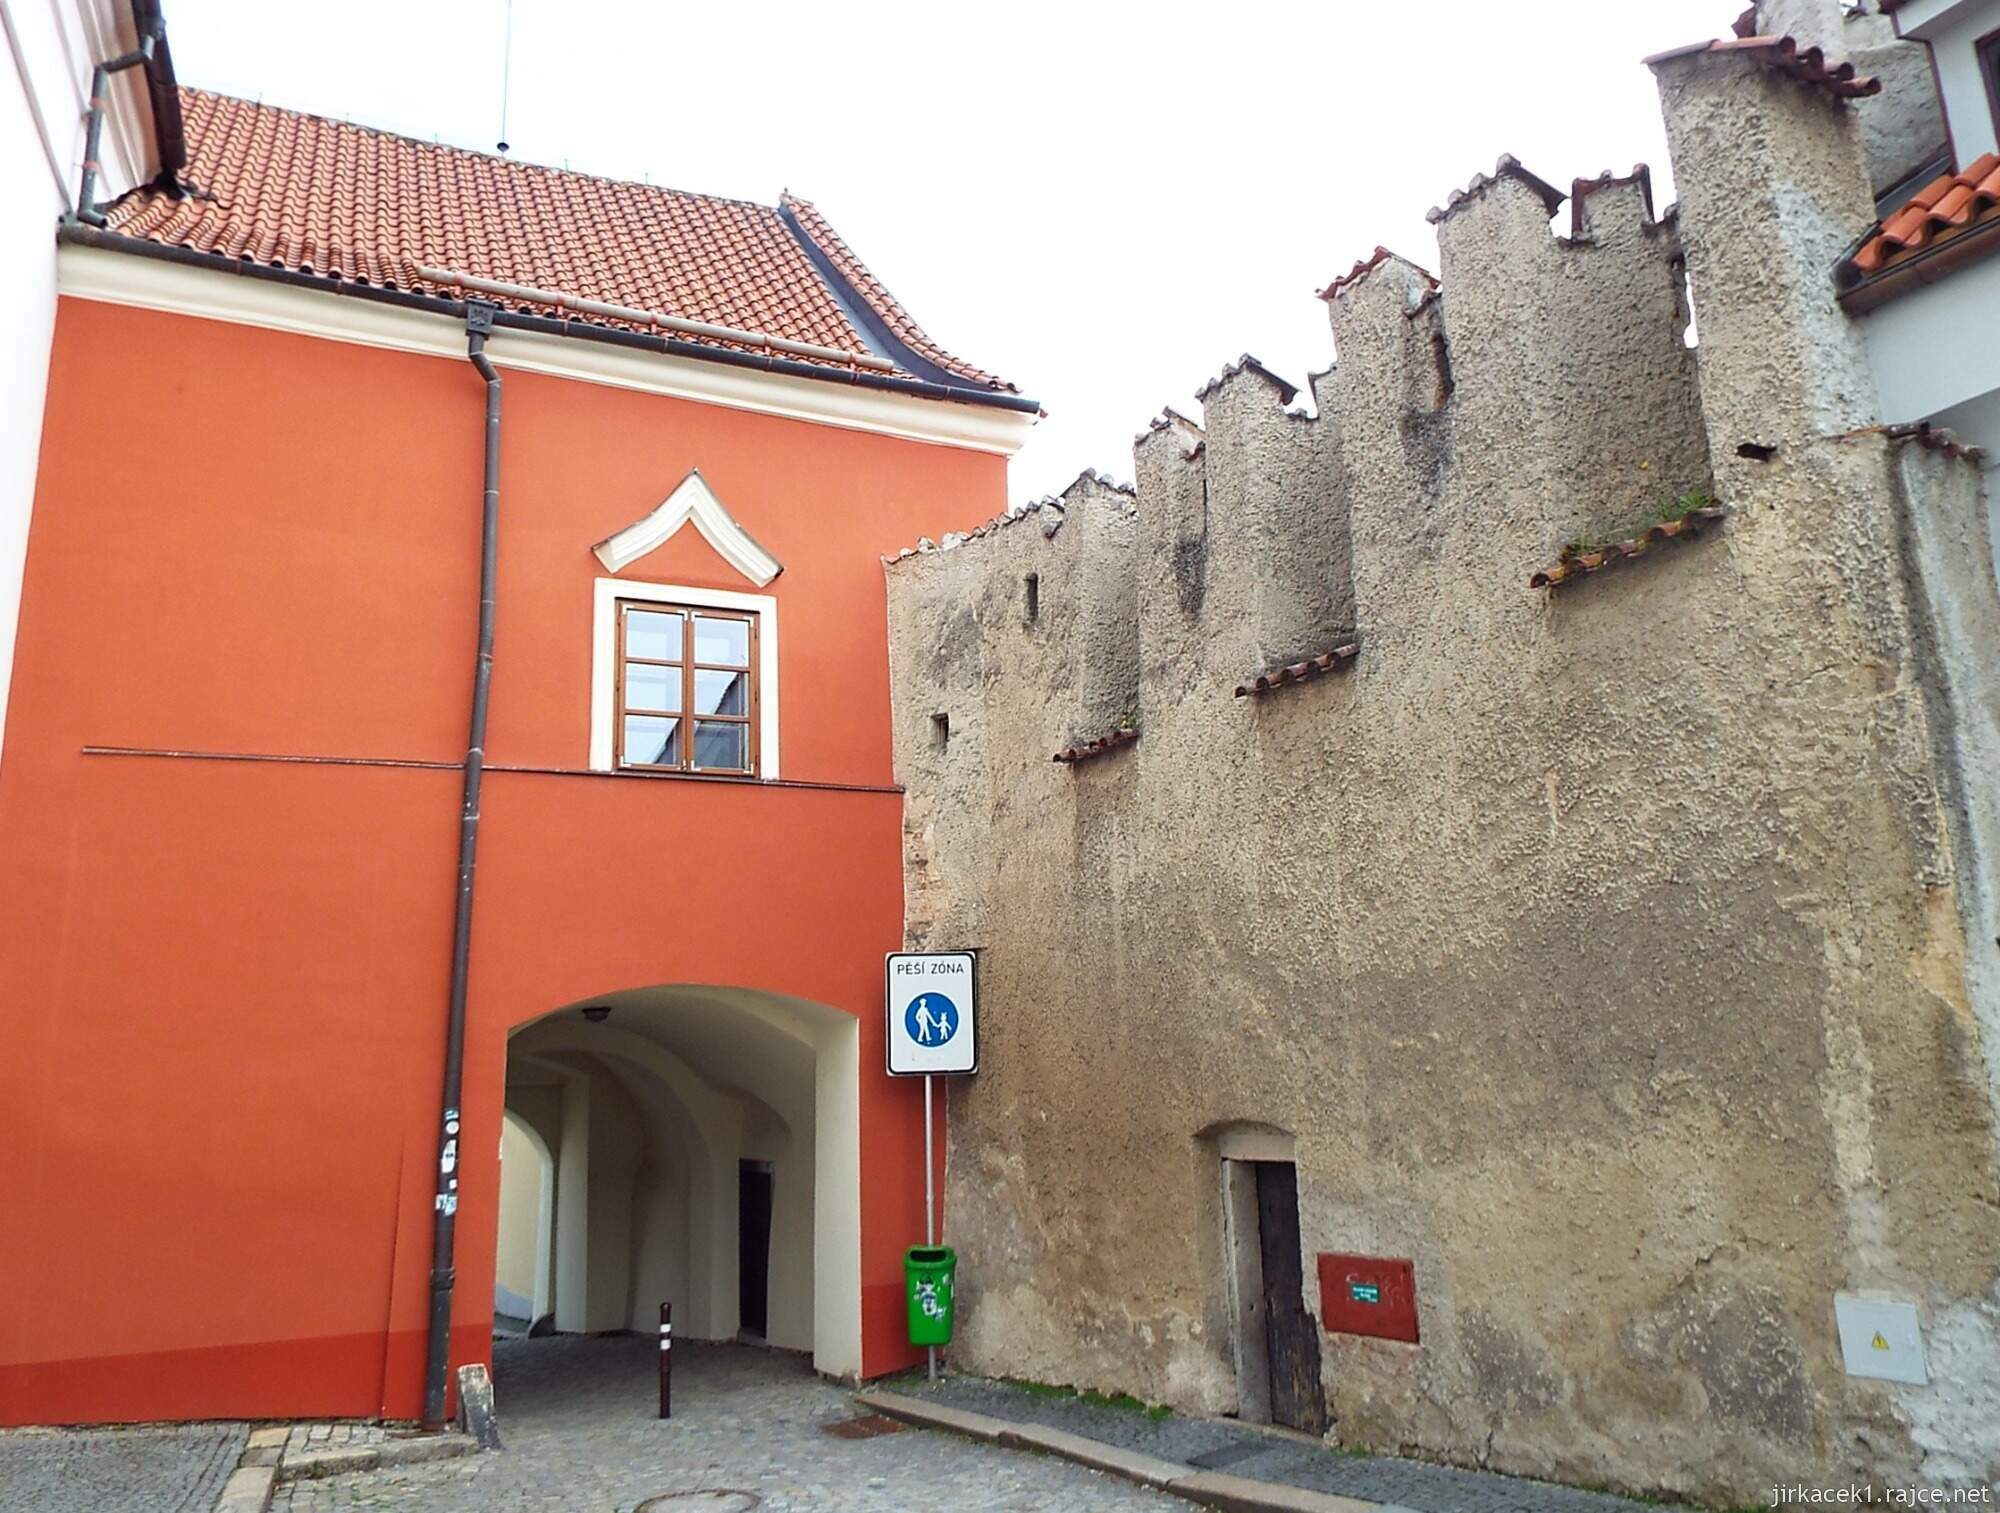 D - Pelhřimov - Městské hradby 02 - Solní brána a část hradební zdi